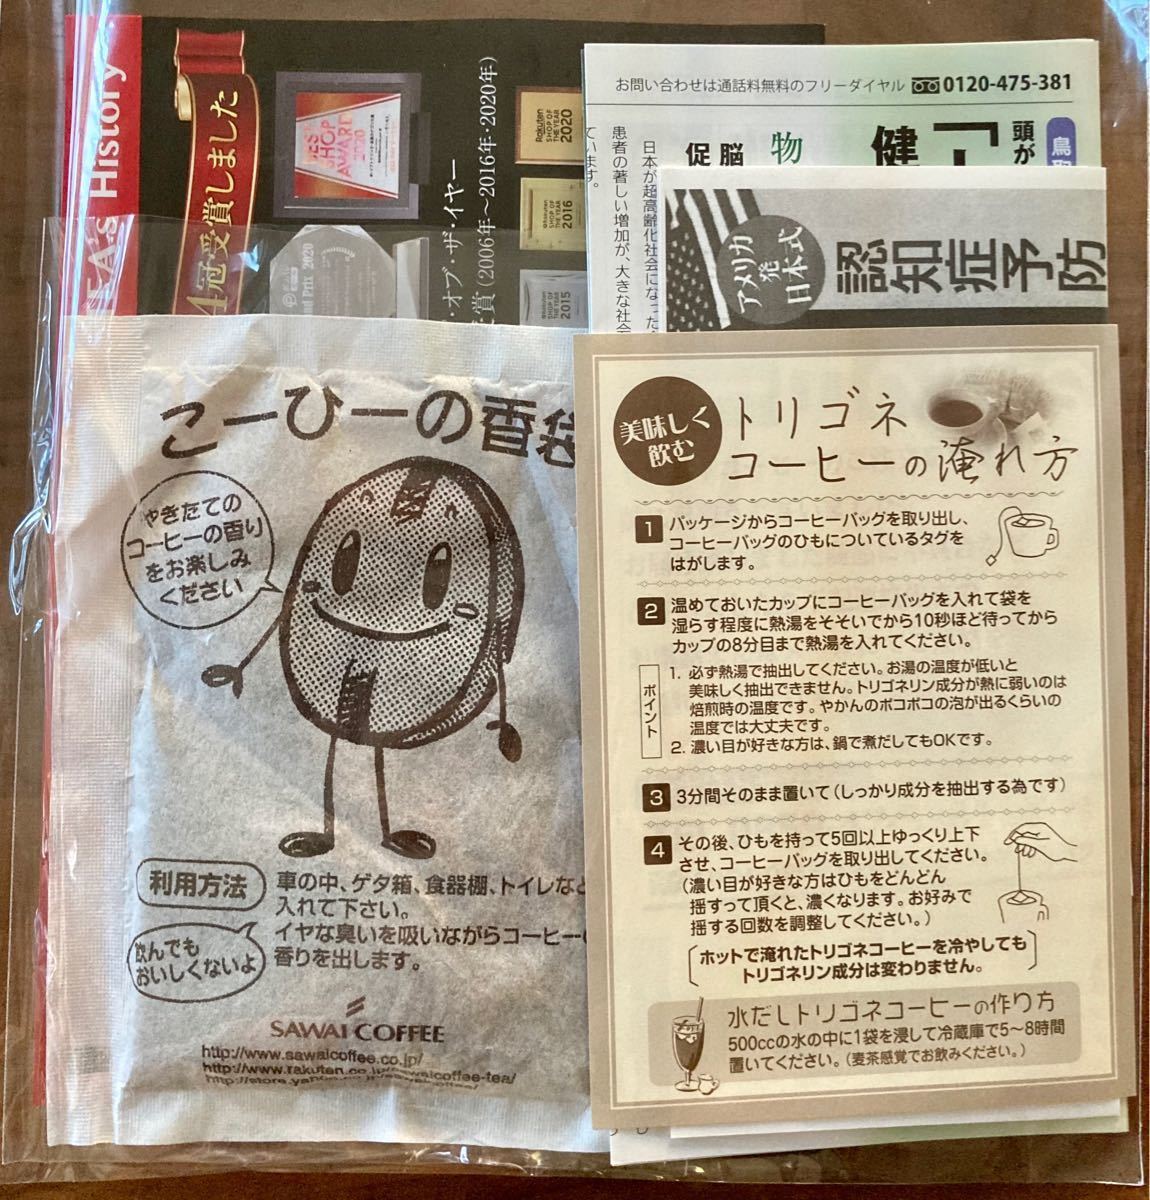 澤井珈琲 トリゴネコーヒー カフェイン入りタイプ お得用100袋 & カフェインレスタイプ お得用100袋